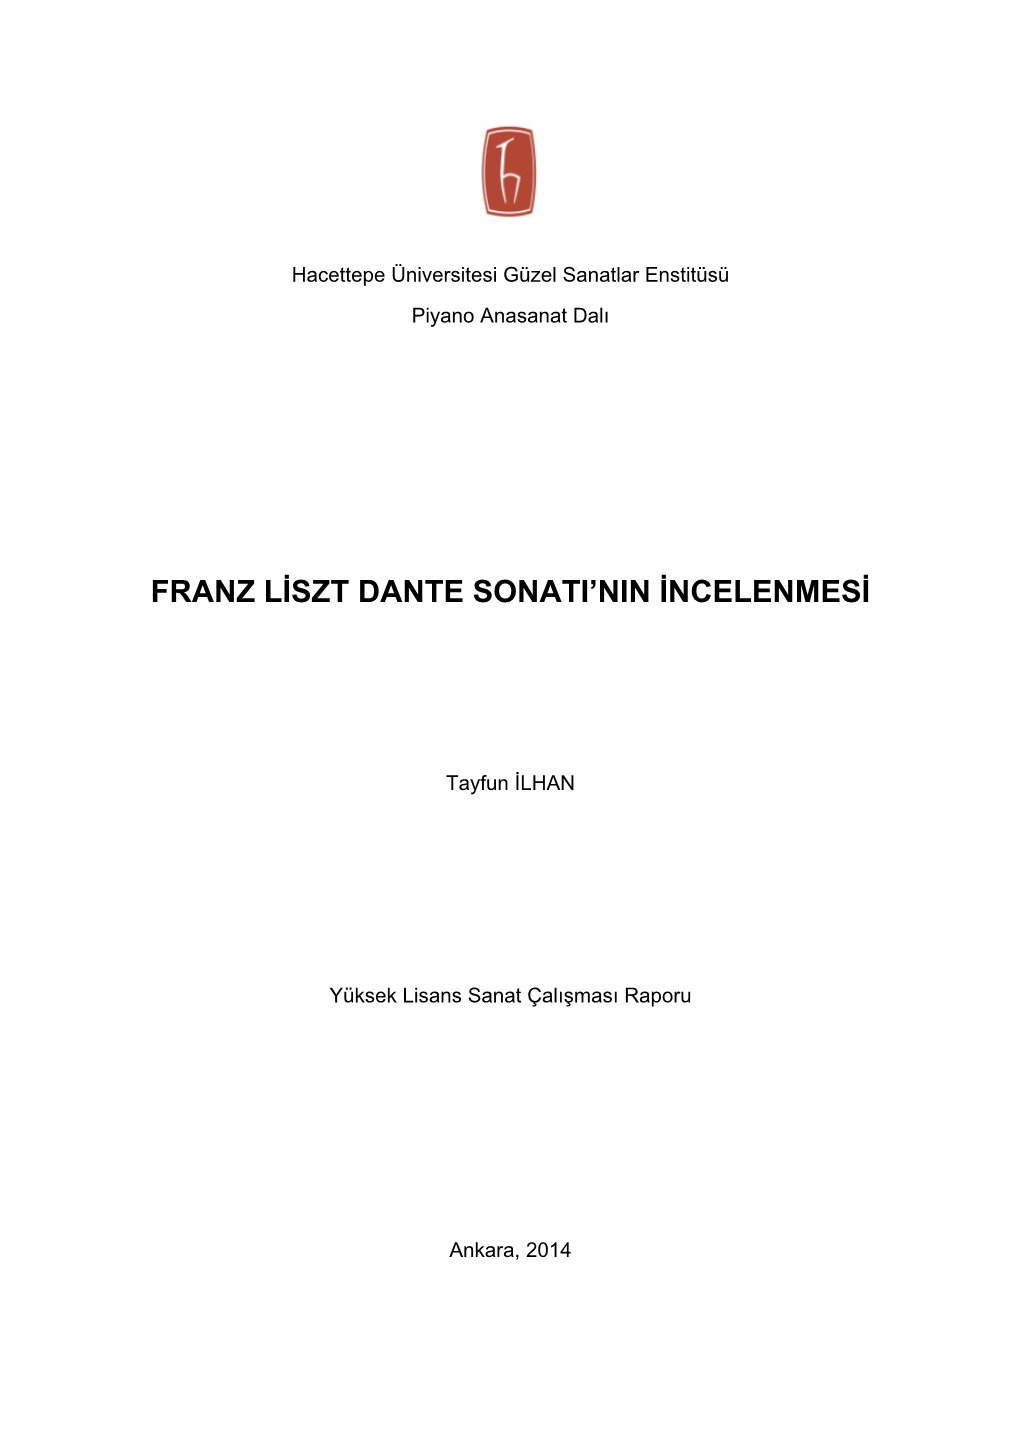 Franz Liszt Dante Sonatı'nın Incelenmesi